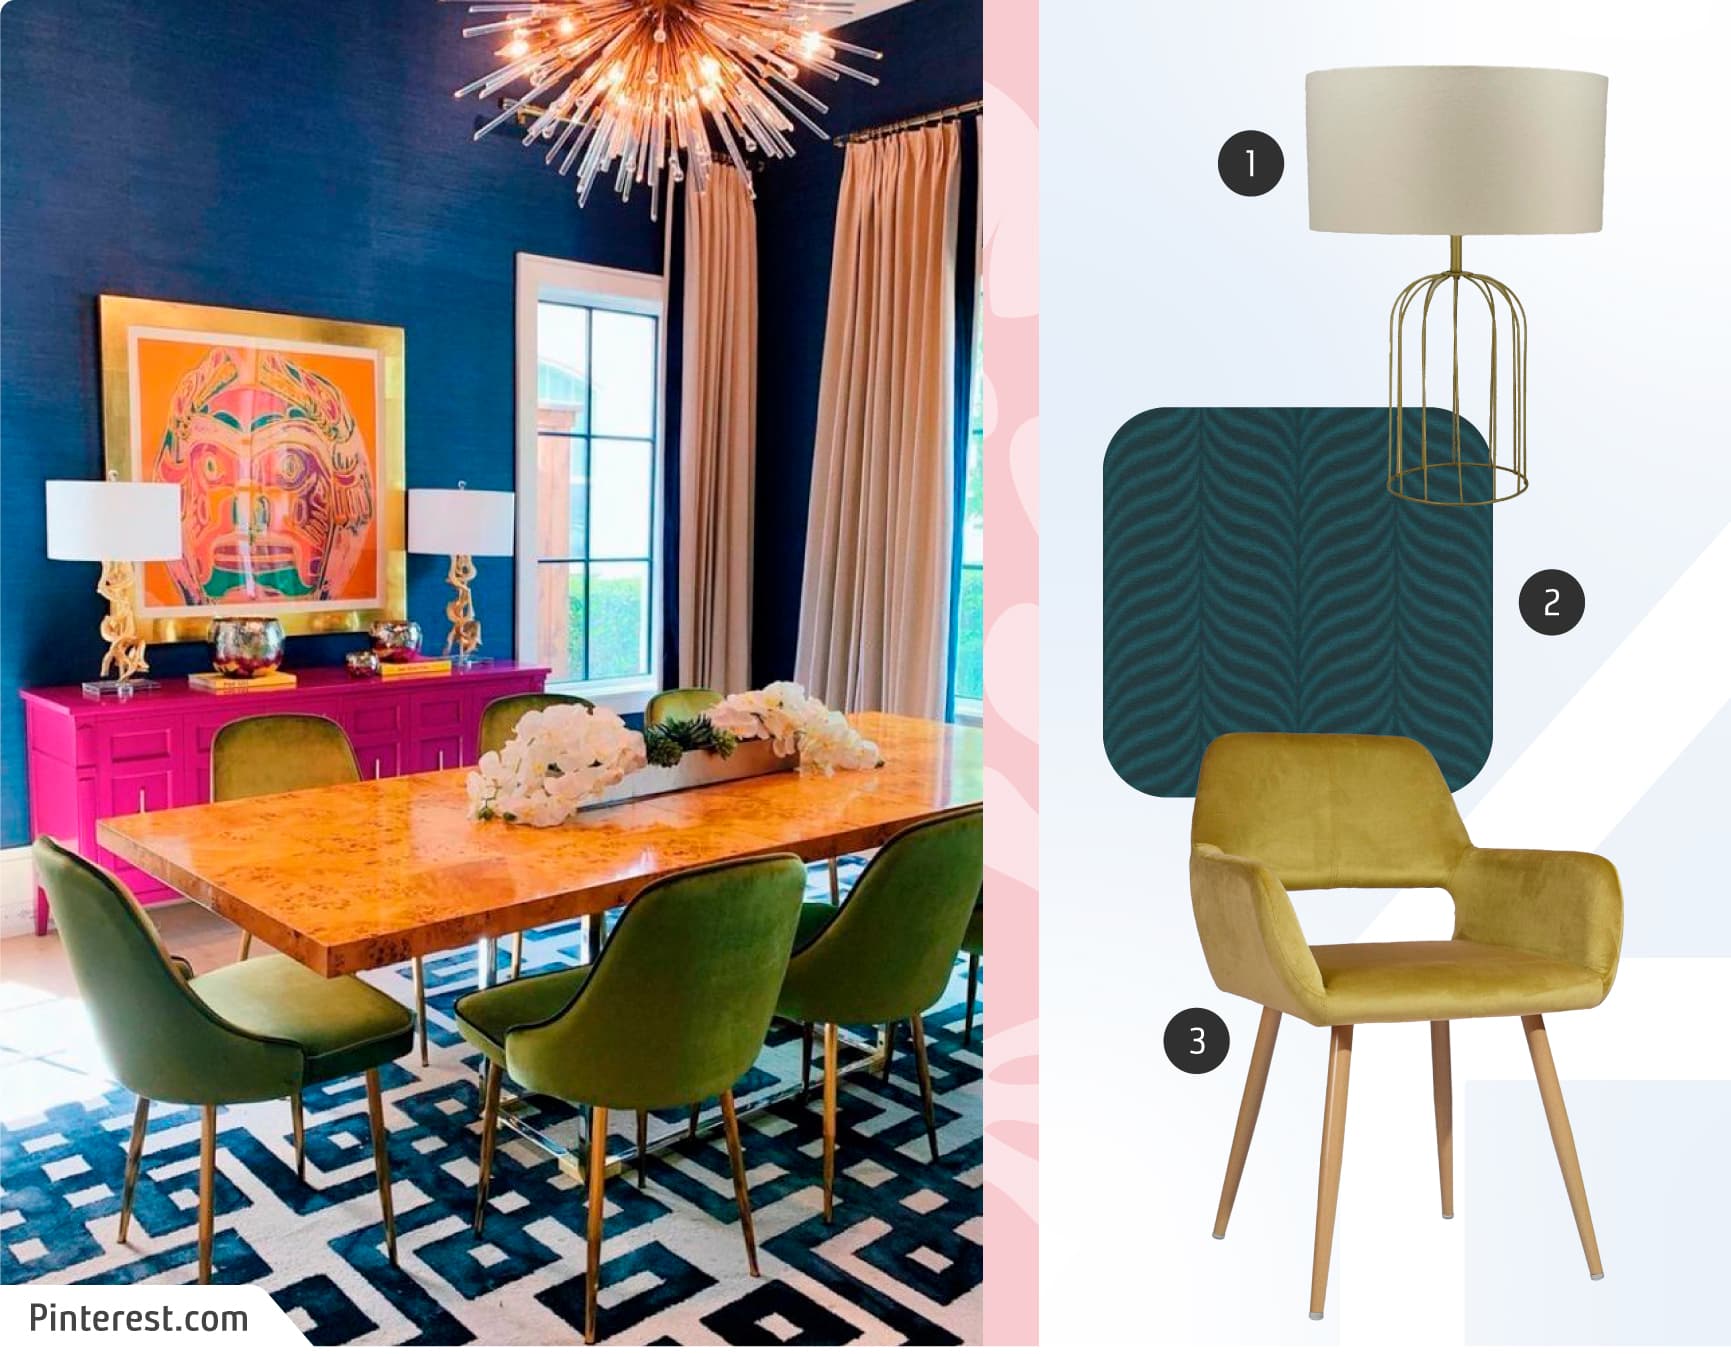 Moodboard de inspiración con una foto de un comedor de estilo maximalista de paredes azules, sillas verdes, alfombra blanco y negro, buffet rosado, y junto a ella, una lámpara de mesa dorada, una papel mural verde azulado y una silla de comedor verde.